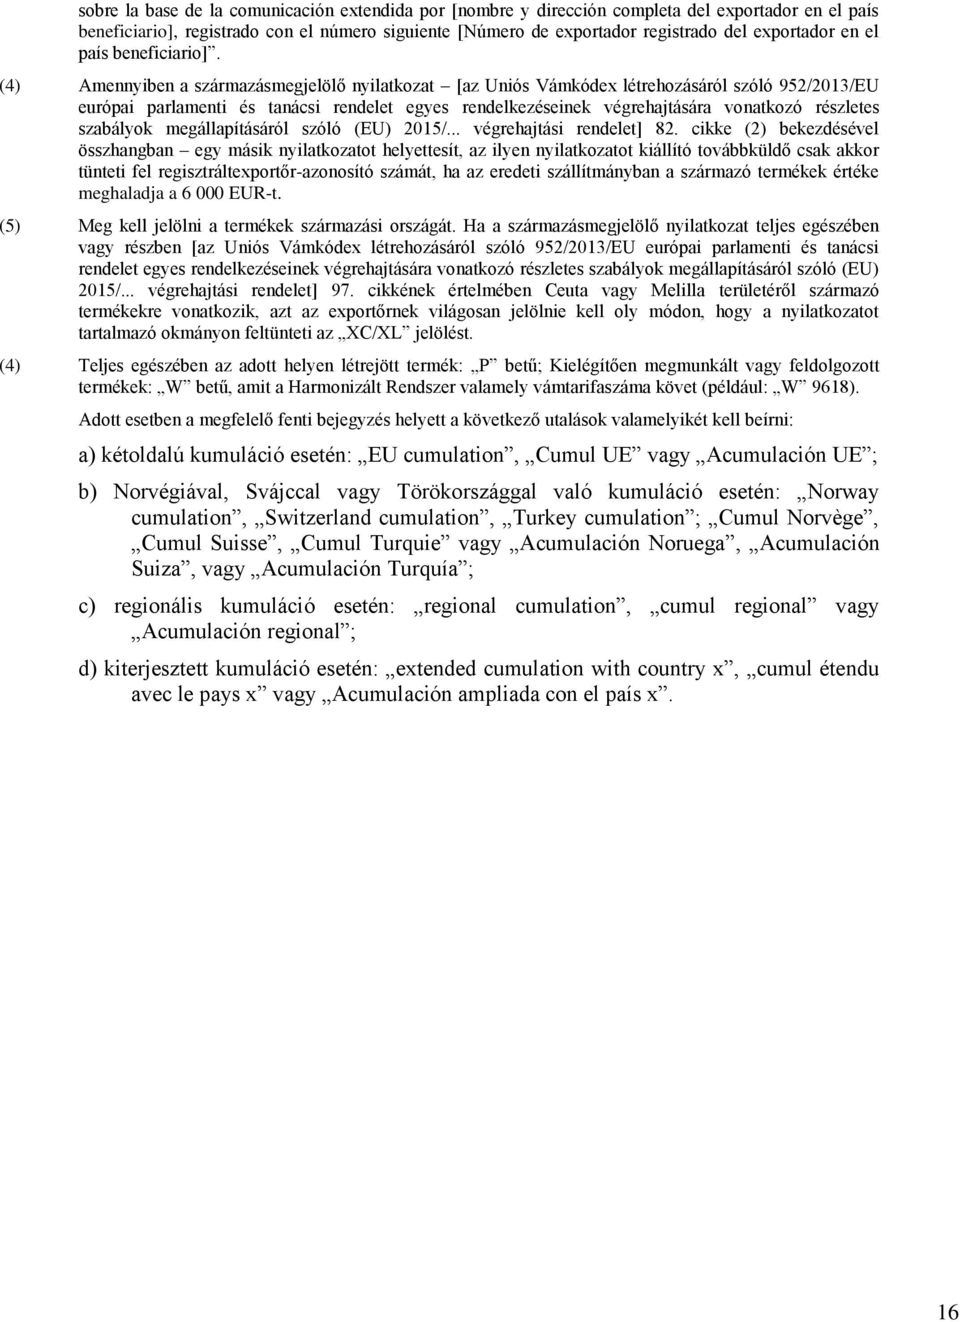 (4) Amennyiben a származásmegjelölő nyilatkozat [az Uniós Vámkódex létrehozásáról szóló 952/2013/EU európai parlamenti és tanácsi rendelet egyes rendelkezéseinek végrehajtására vonatkozó részletes